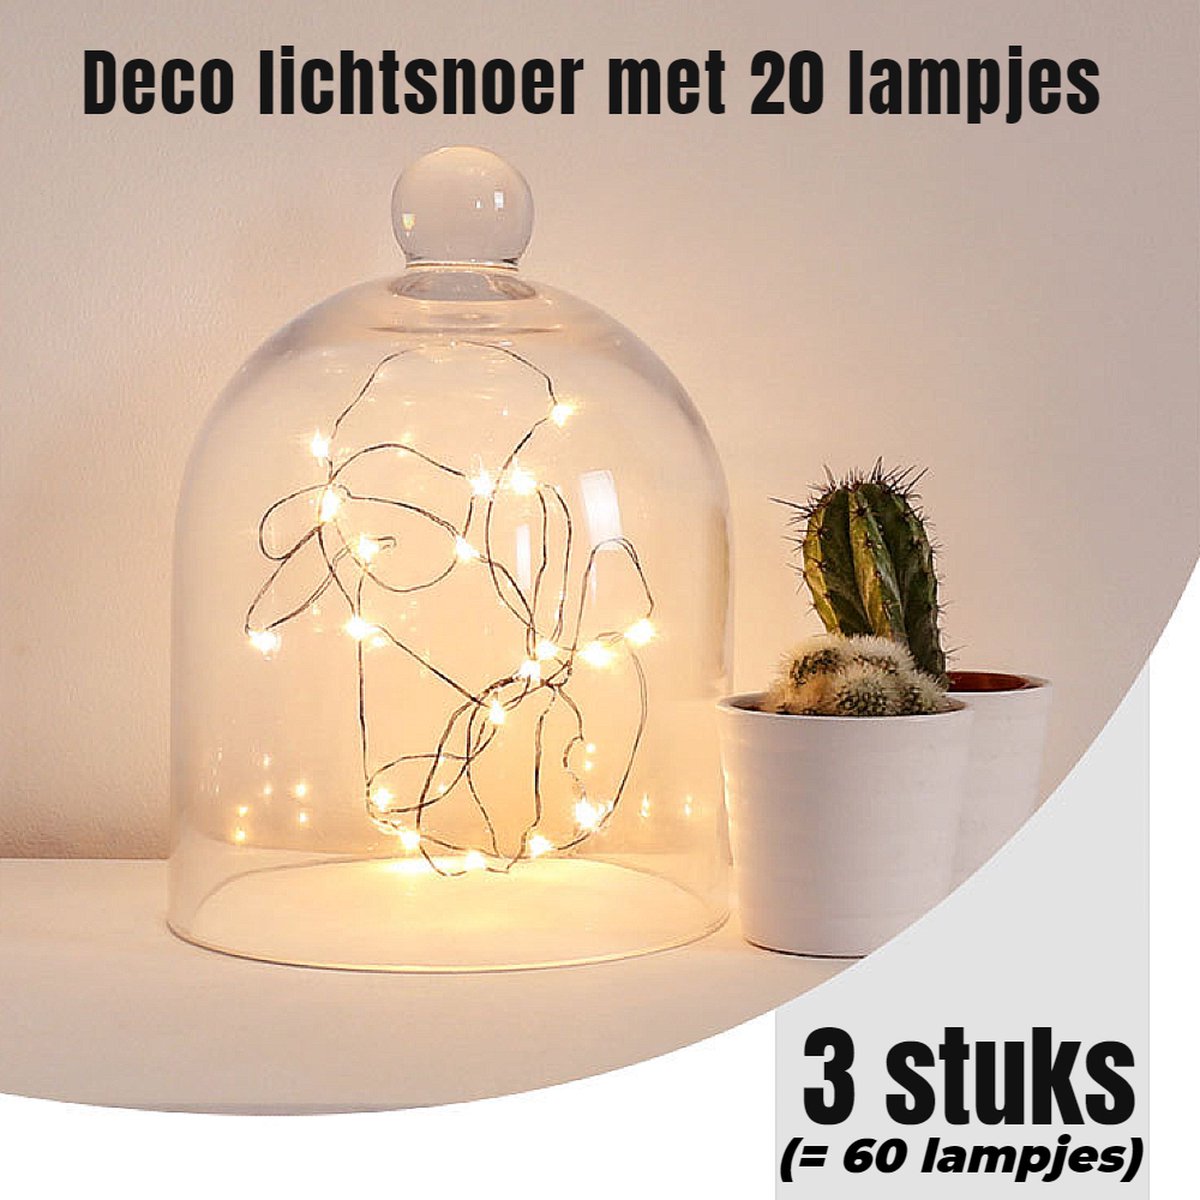 Allernieuwste.nl® 3 STUKS LED Lichtsnoer Wit 2 METER 20 Lampjes Elk - Deco Licht Versiering Decoratie - Wit 2 mtr - 3 Stuks